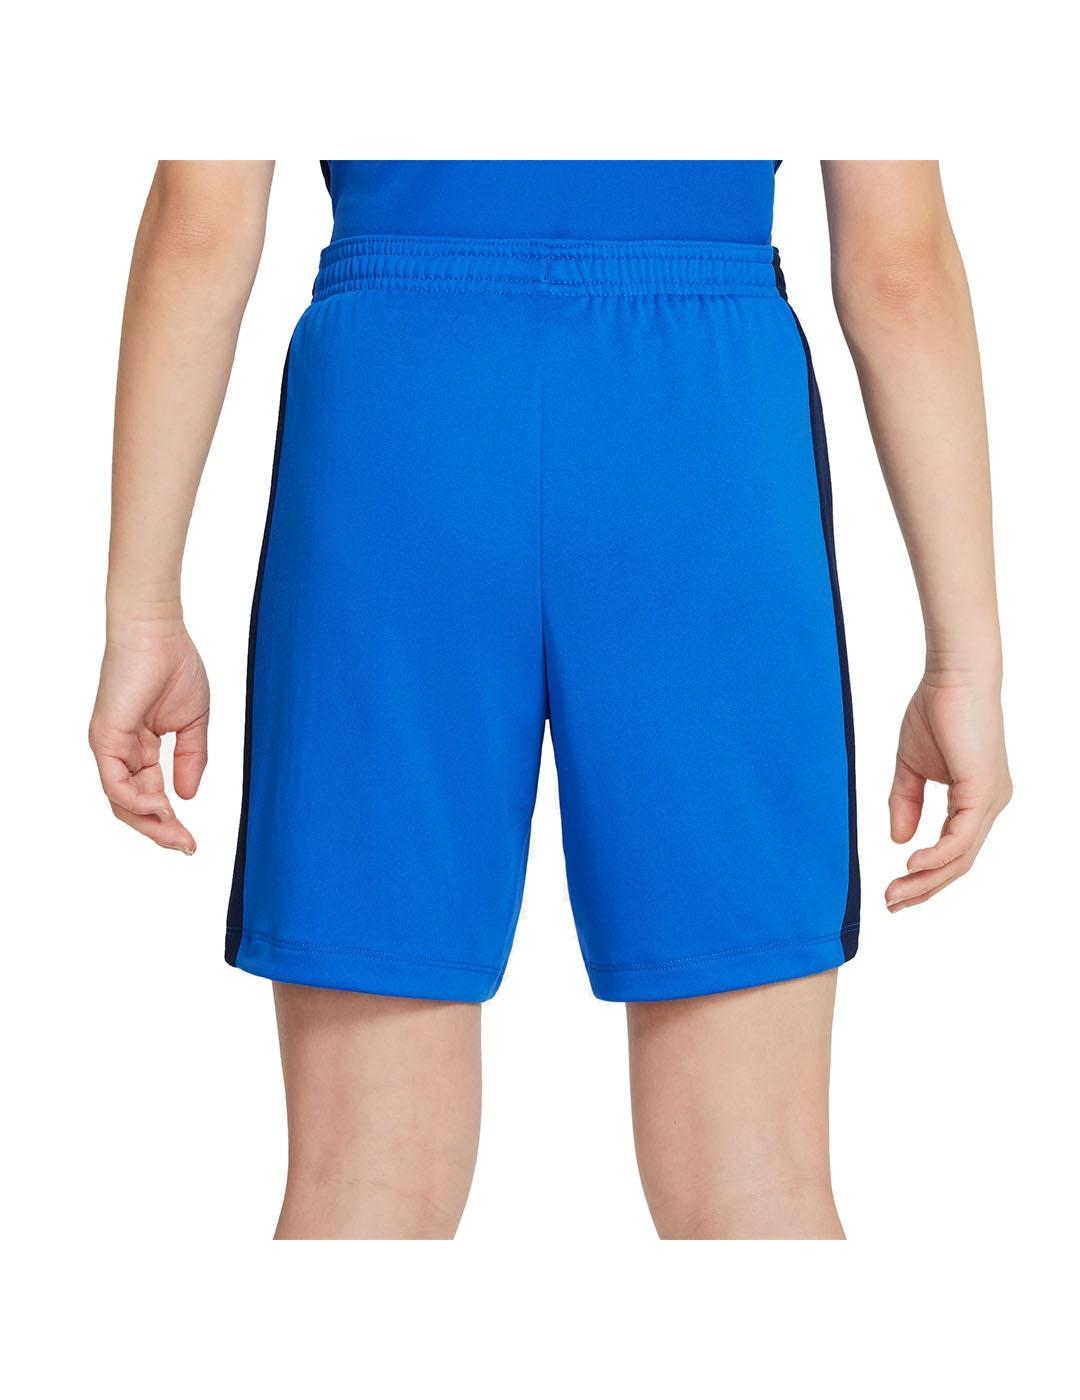 Pantalon corto Niño Nike Acd Azul Royal